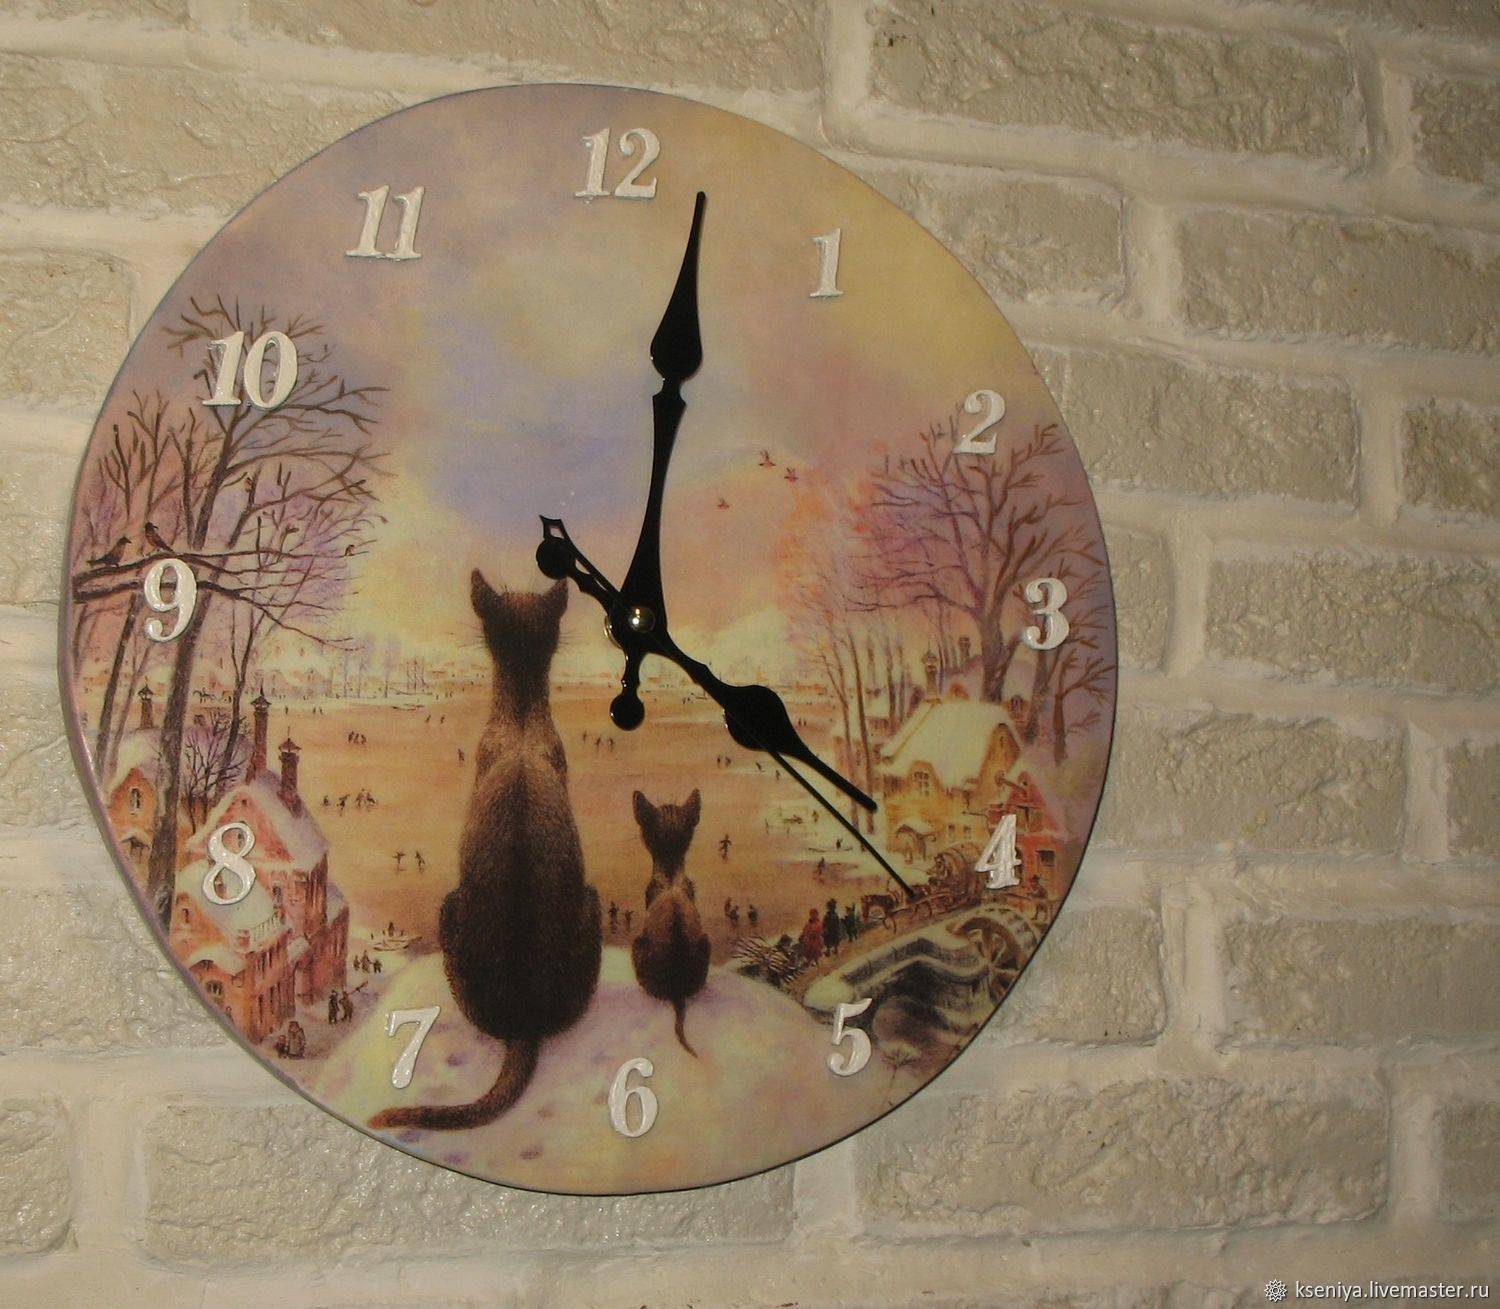 Поделка часы своими руками - 133 фото идеи часов для детского сада, школы, декора дома